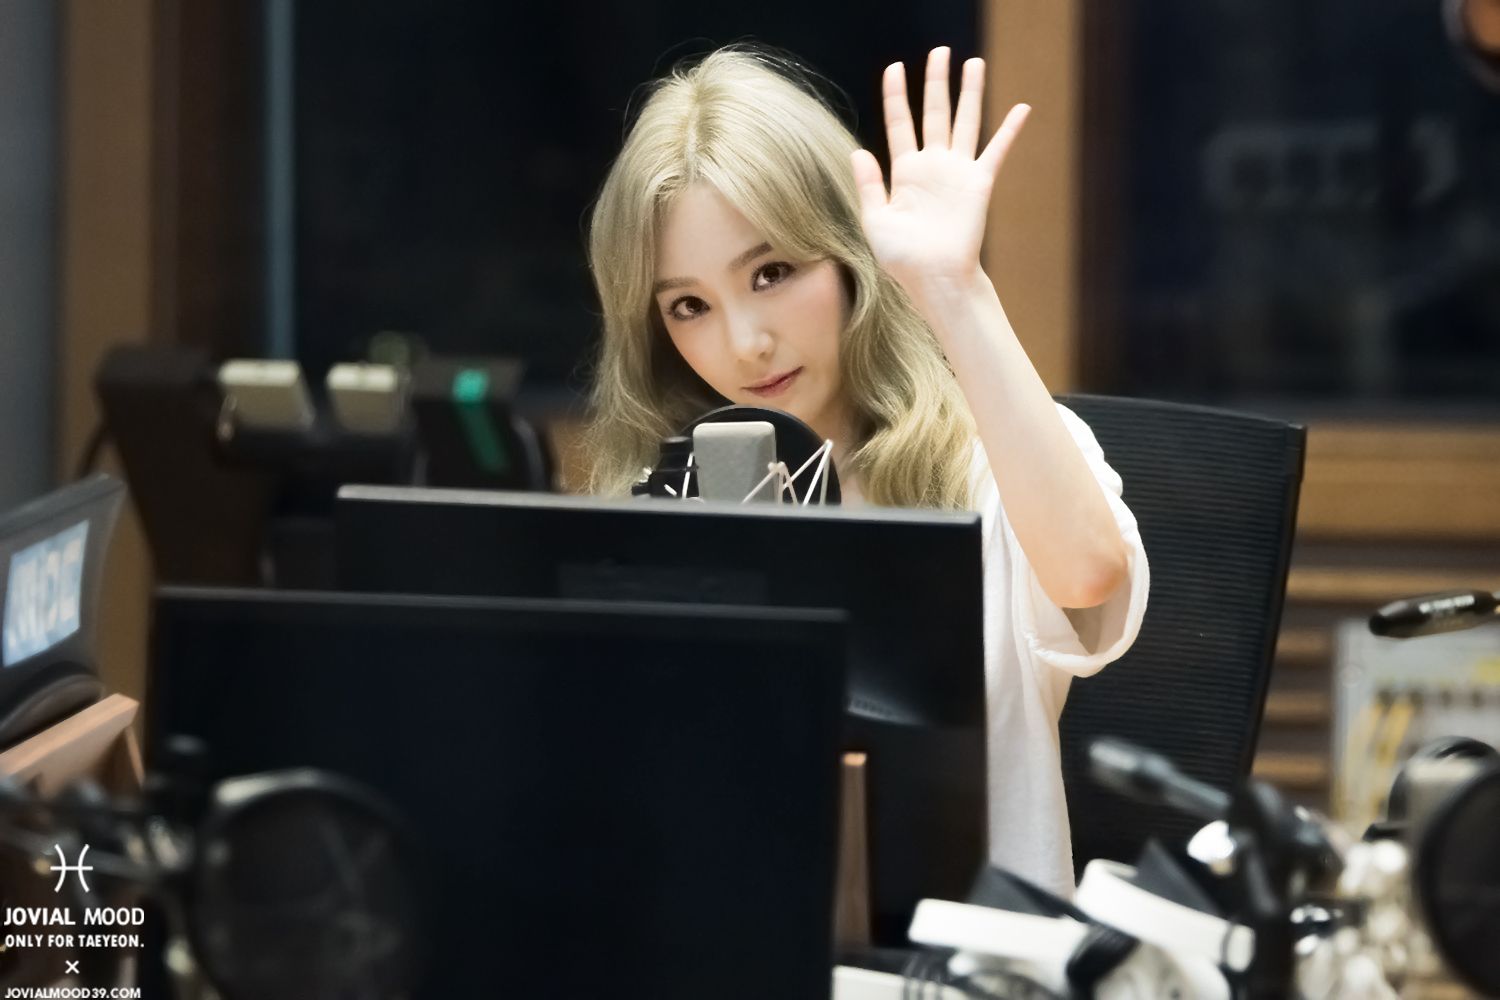 [OTHER][06-02-2015]Hình ảnh mới nhất từ DJ Sunny tại Radio MBC FM4U - "FM Date" - Page 32 28643326714_0f0195e232_o